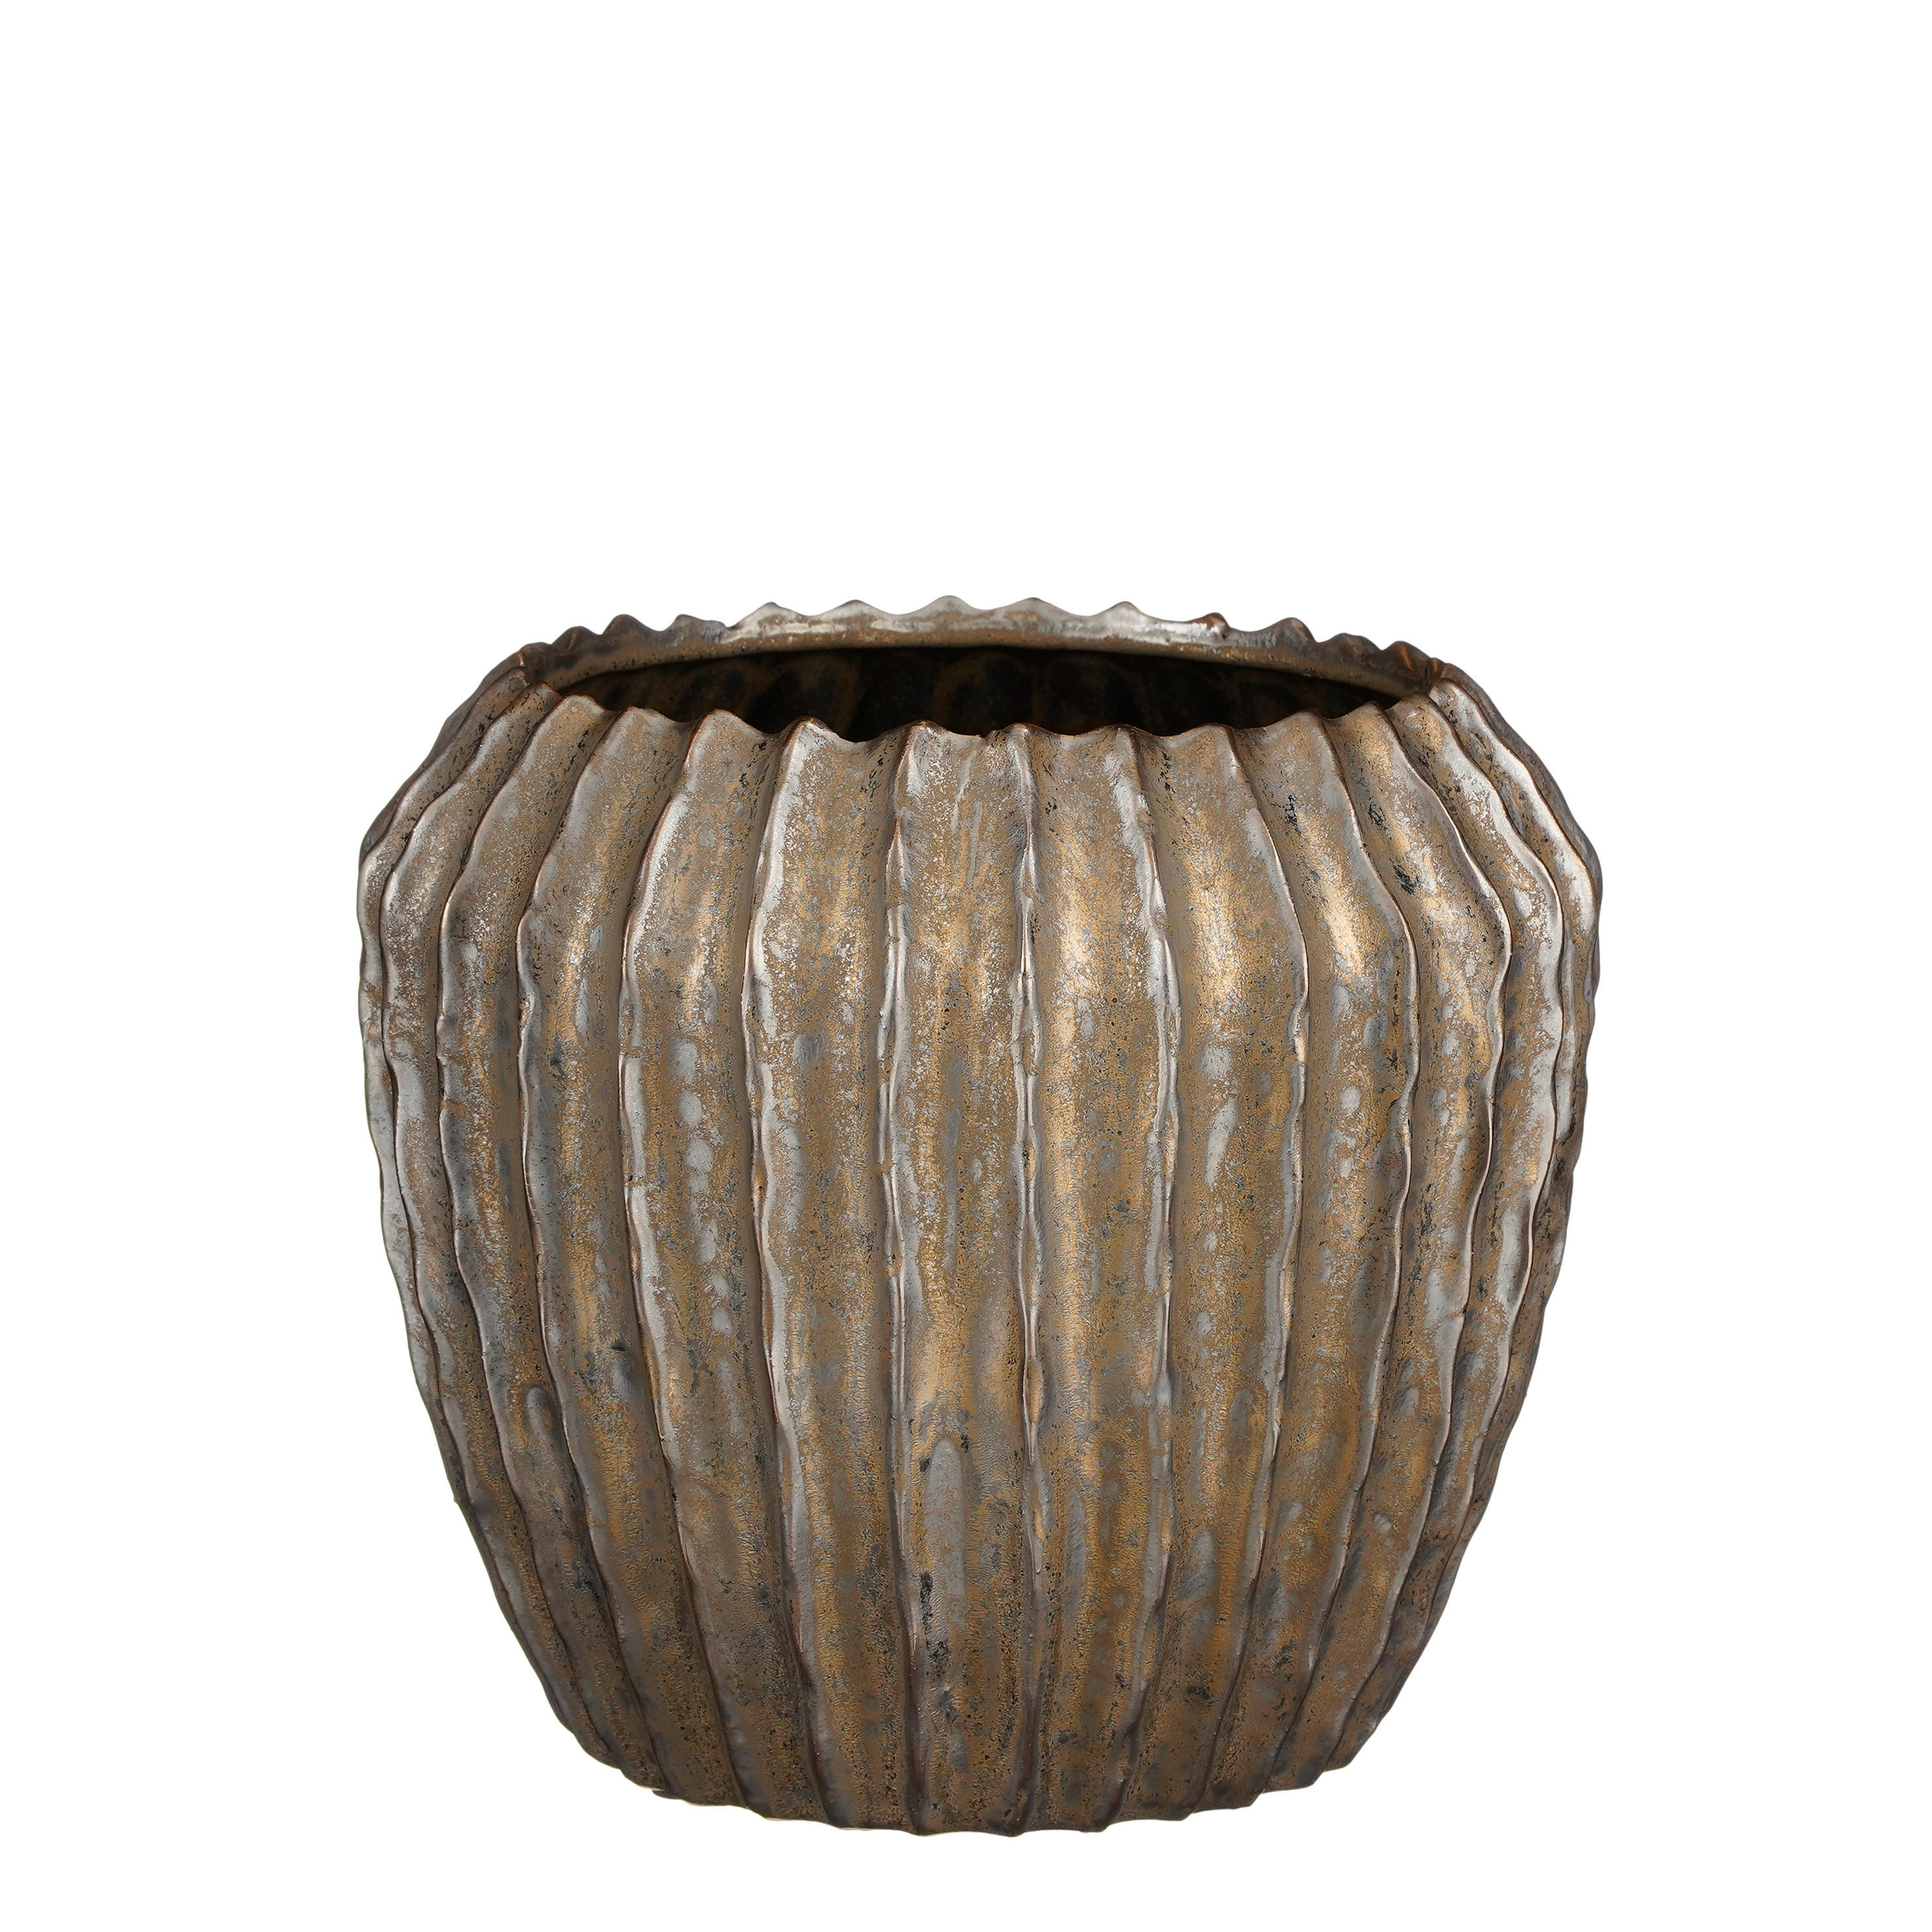 TEGLA ZA BILJKE  keramika  - brončane boje, Basics, keramika (24/21cm)